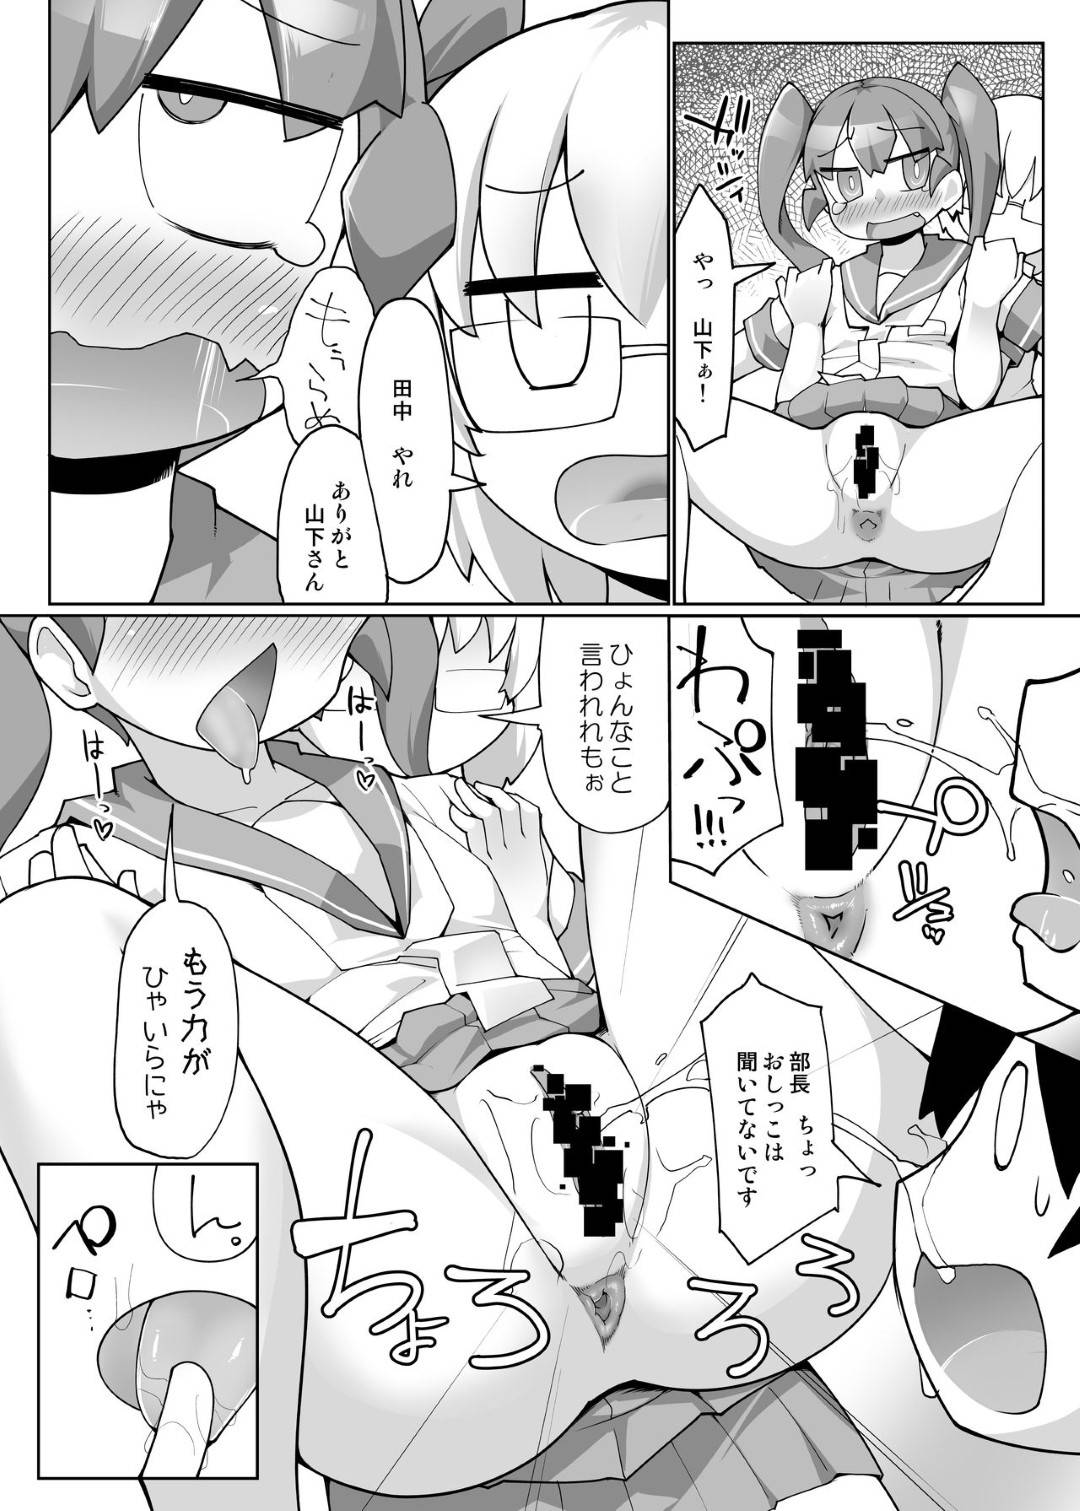 【エロ漫画】田中はカレーライスを食べるために、上野と山下に浣腸をし肛門から出てきたカレーライスを食べる【こたつ。】